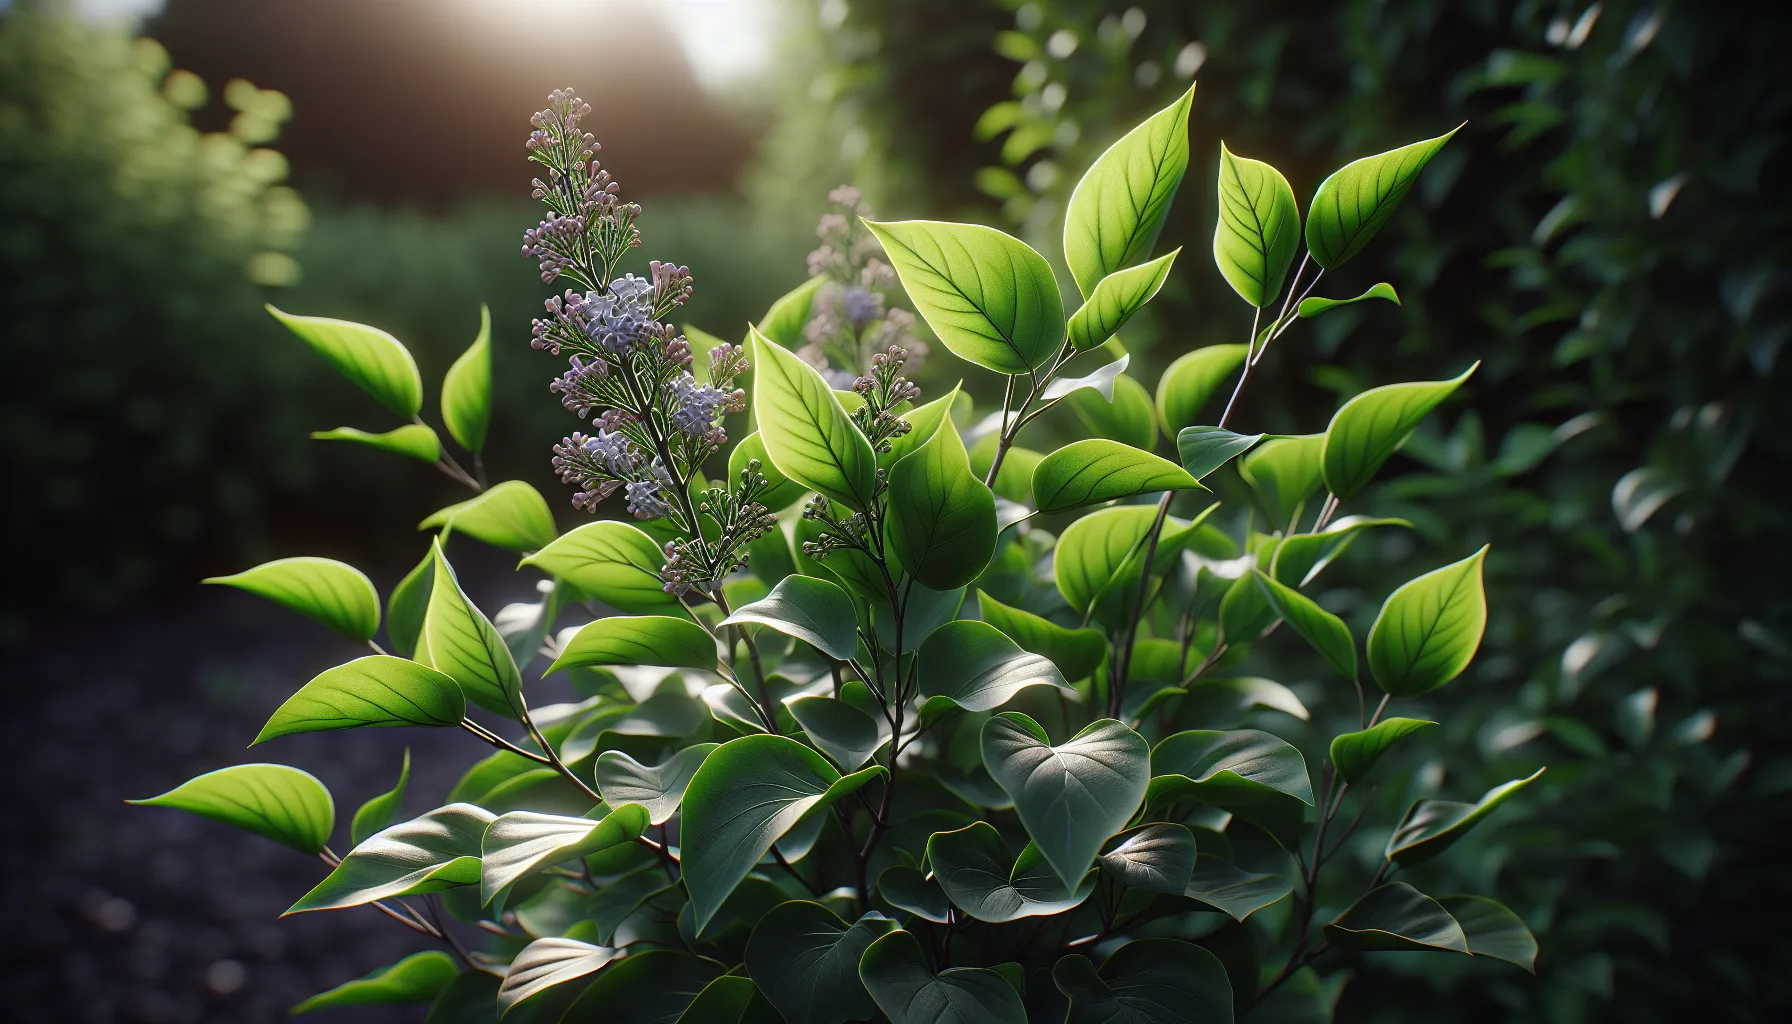 Imagen de una planta de lila con hojas verdes y saludables, pero sin flores visibles, en un jardín soleado.